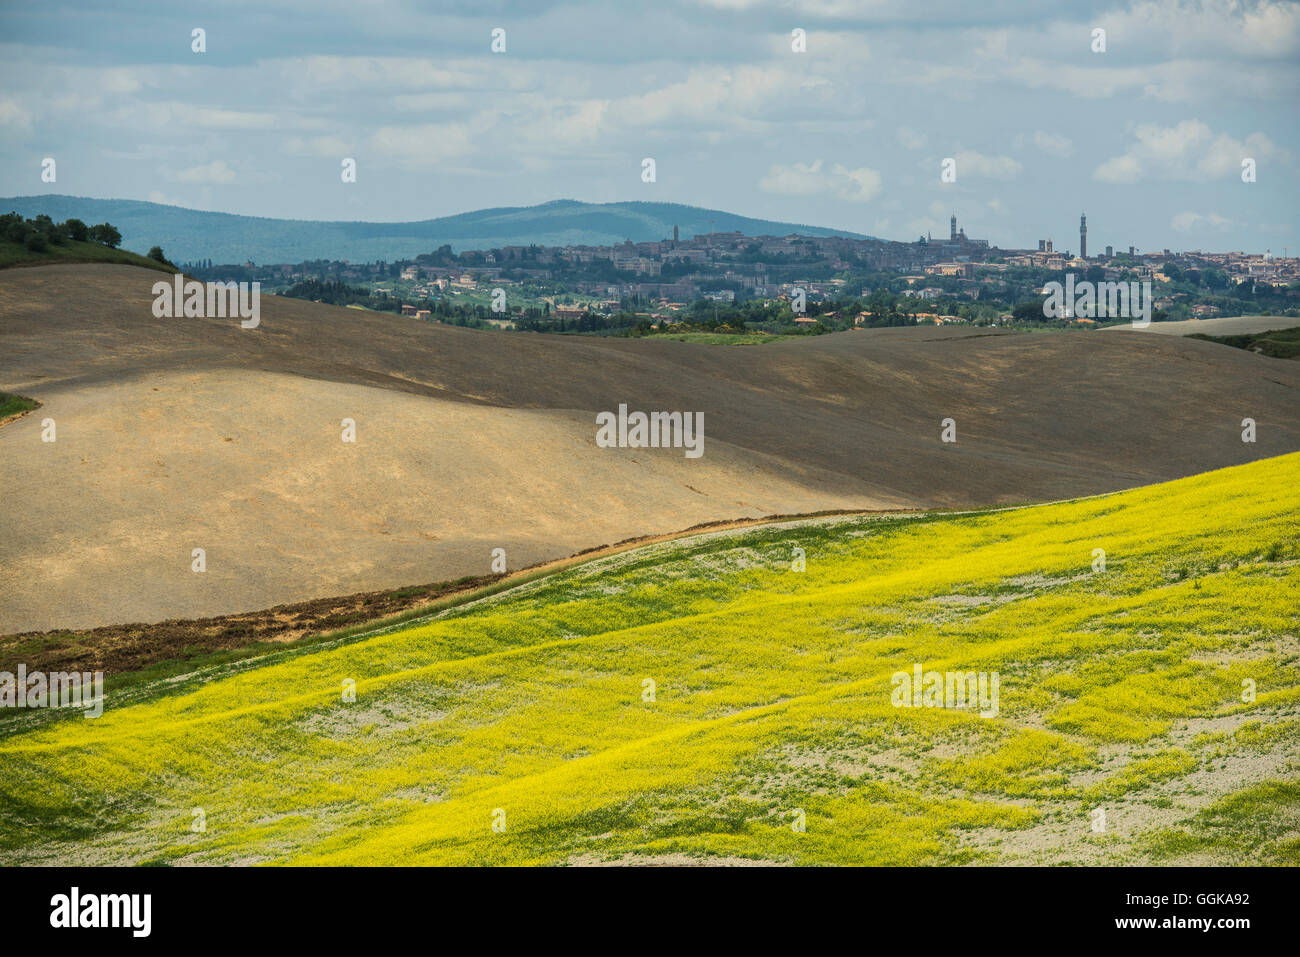 Landscape near Crete Senesi, near Siena, Tuscany, Italy Stock Photo